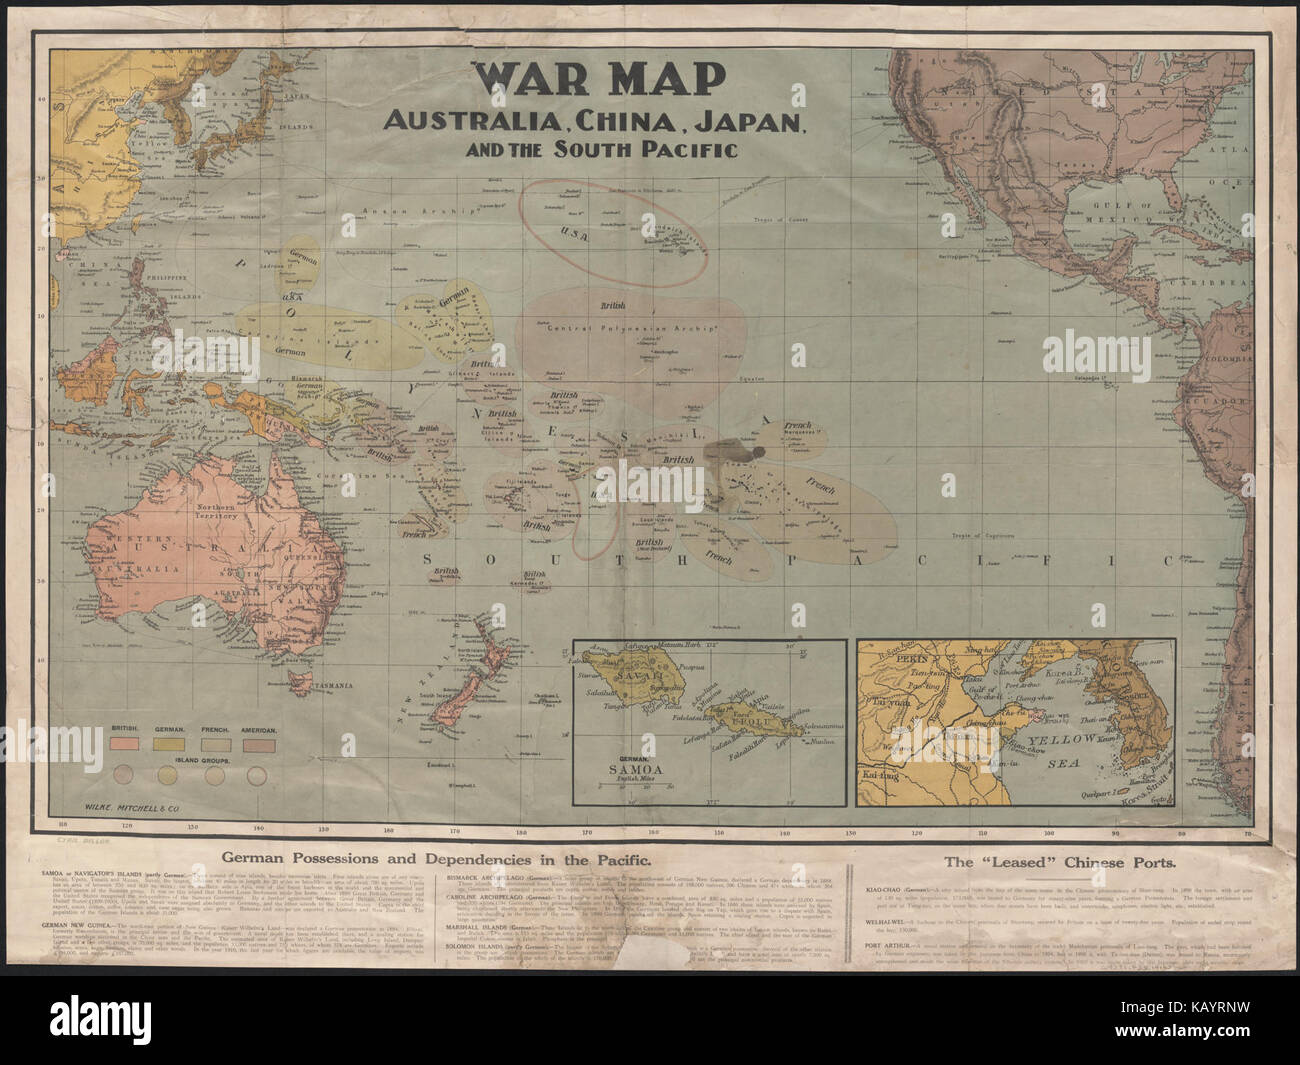 Carte de la guerre de l'Australie, la Chine, le Japon, et le Pacifique Sud (1914) Banque D'Images